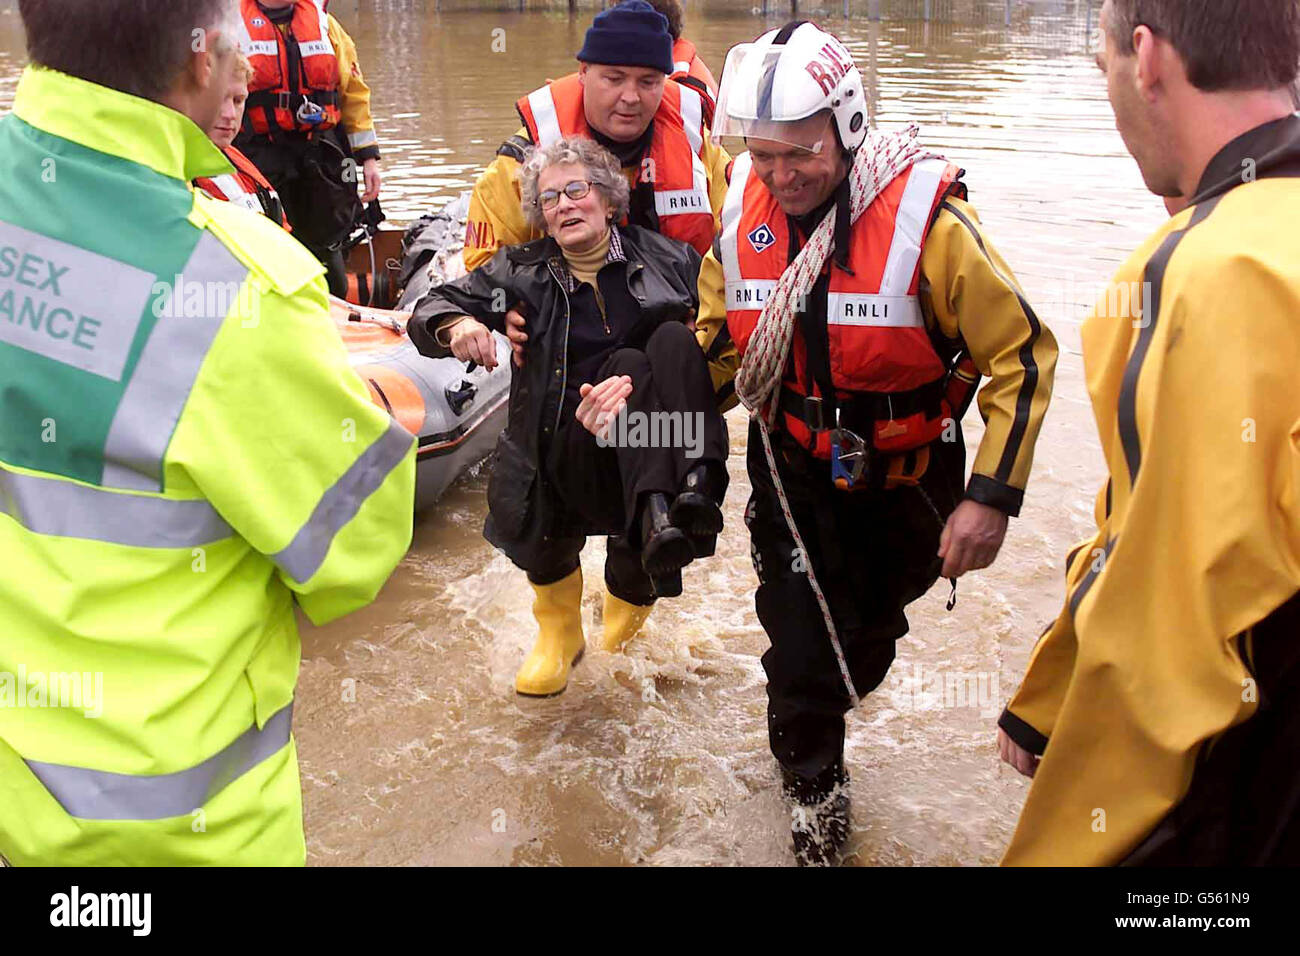 Eine Frau wird aus ihrem überfluteten Haus in Lewes, East Sussex, gerettet, nachdem über Nacht 14 cm Regen in der Gegend gefallen war und der Fluss Ouse seine Ufer platzte. Die RNLI und andere Rettungsdienste brachten kleine aufblasbare Schlauchboote mit, um die Rettung zu unterstützen. Stockfoto